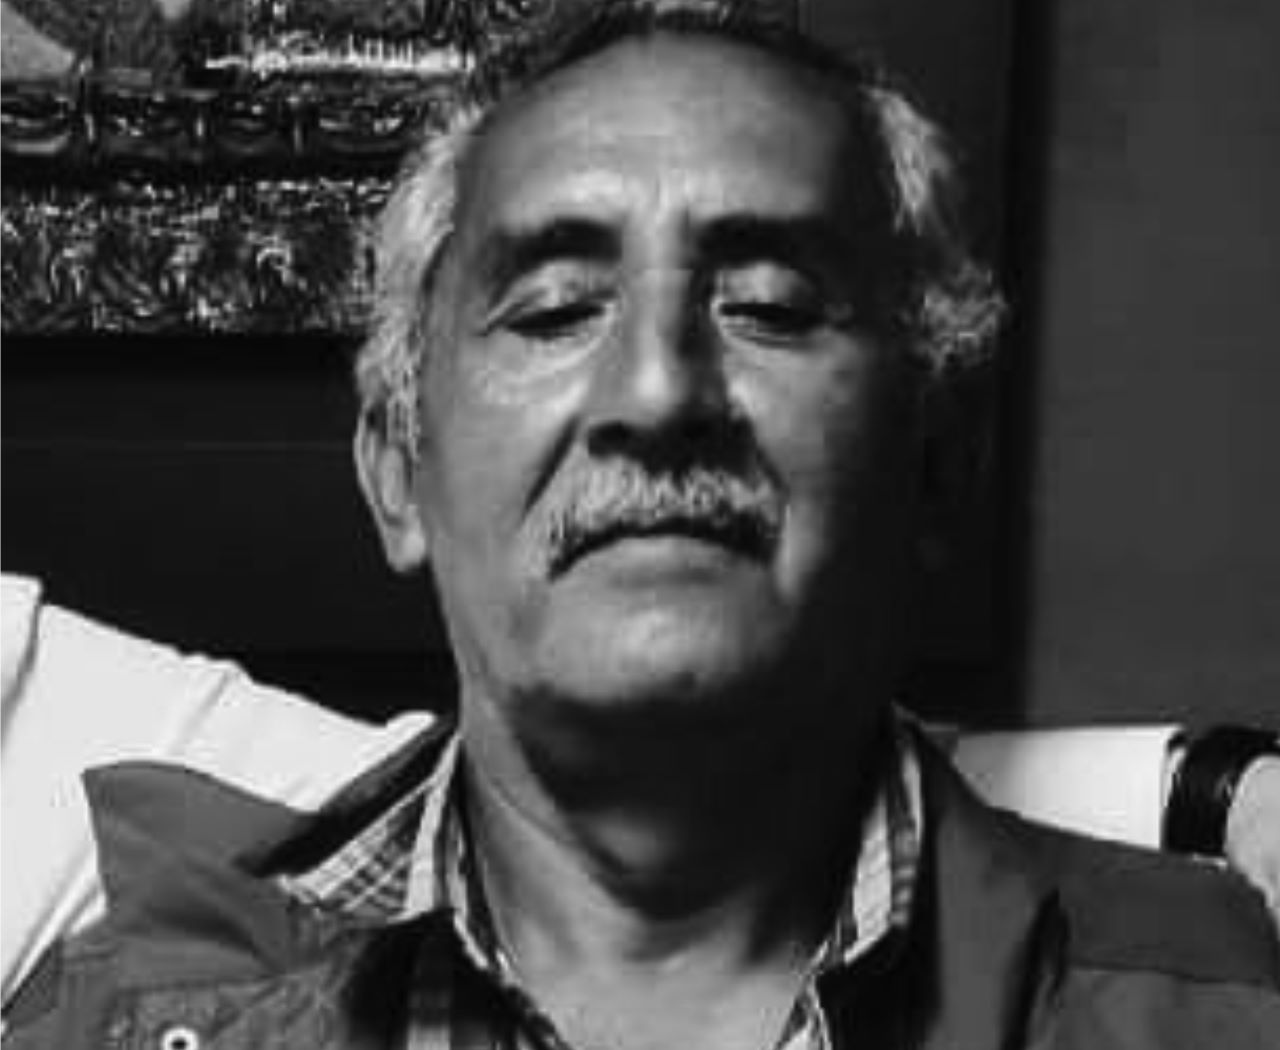 Un año de impunidad por la muerte de Roberto Toledo